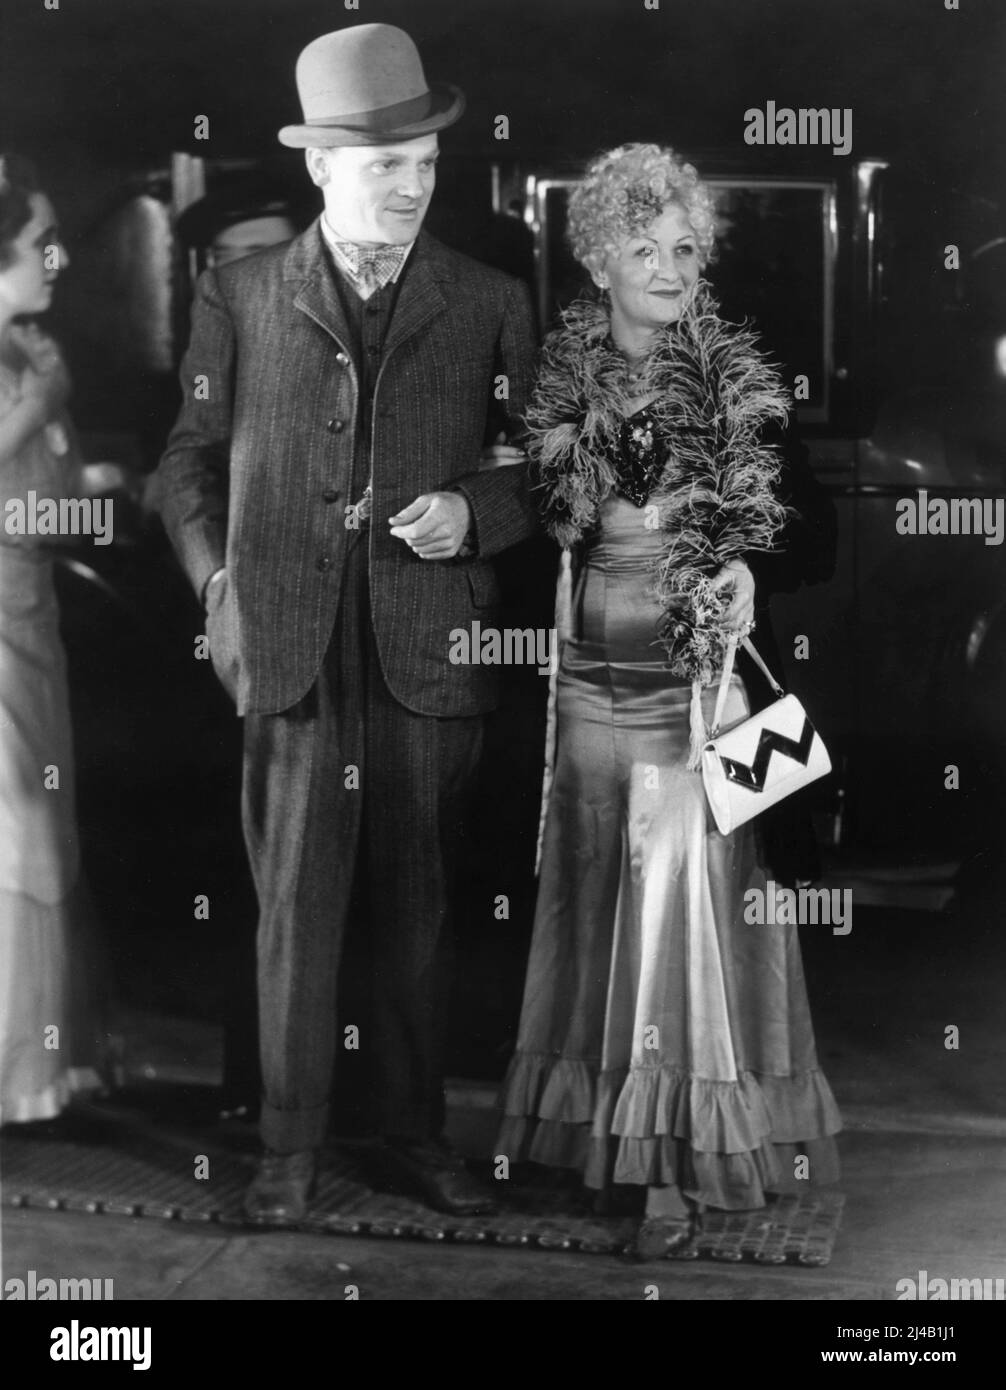 JAMES CAGNEY et sa femme BILLIE / FRANCES CAGNEY arrivant en costume de fantaisie pour la fête avec un gay Nineties thème donné par Darryl F. Zanuck après la première à Hollywood de son film THE BOWERY en octobre 1933 Banque D'Images